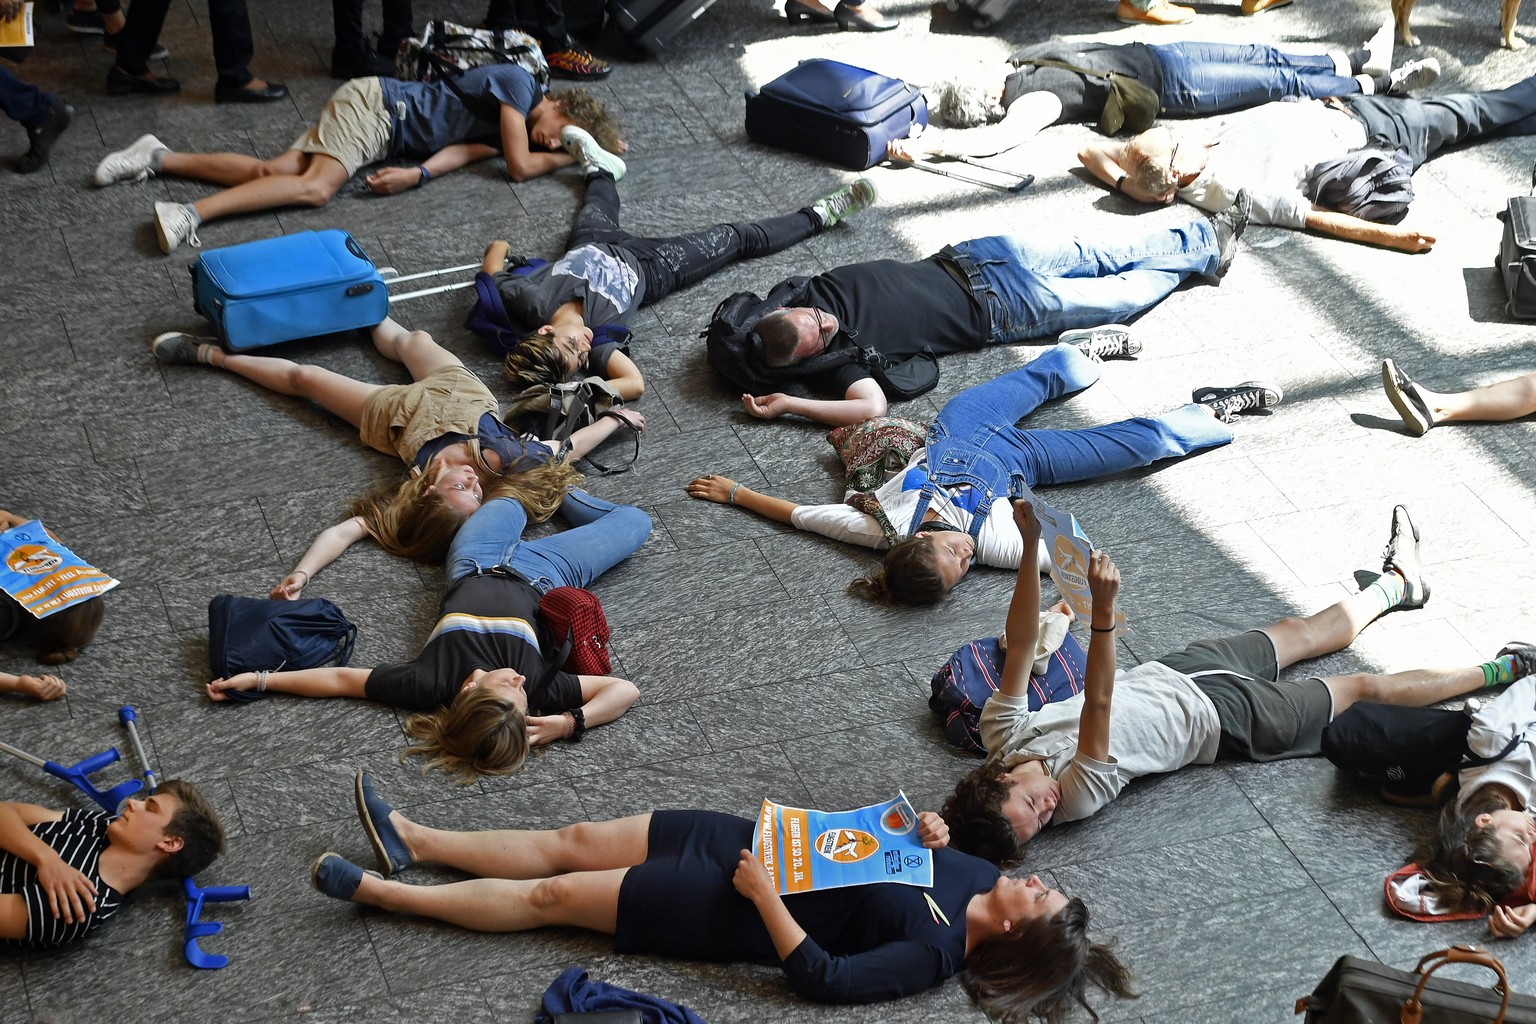 Aktion von Klimaaktivisten zum Ferienstart auf dem Flughafen Zuerich in Kloten am Samstag, 13. Juli 2019. (KEYSTONE/Walter Bieri)